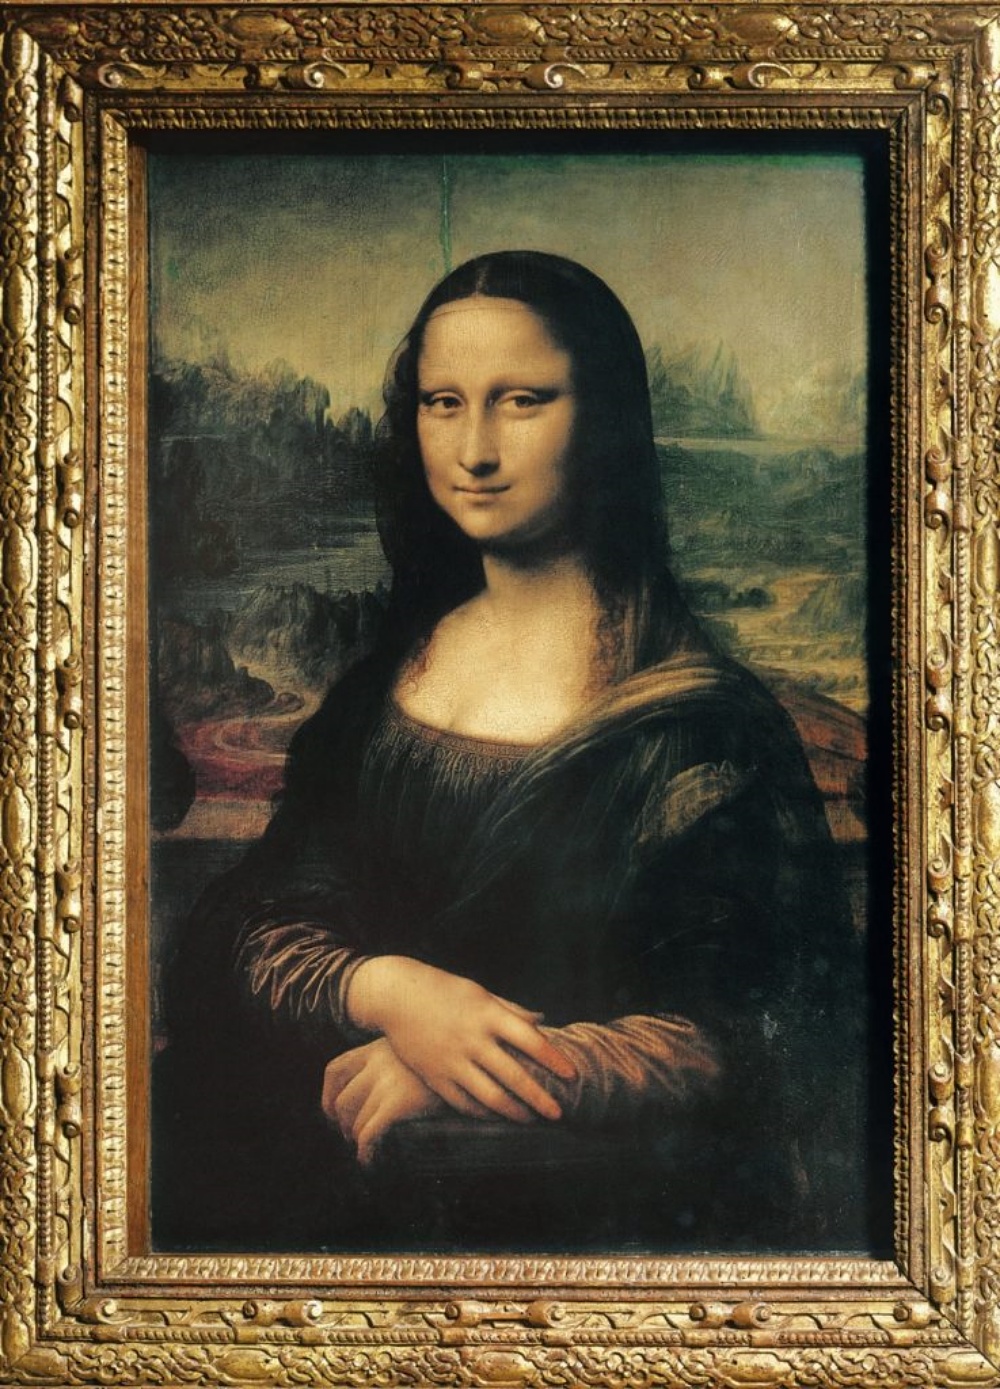 desaparición de la Mona Lisa o de leonardo da